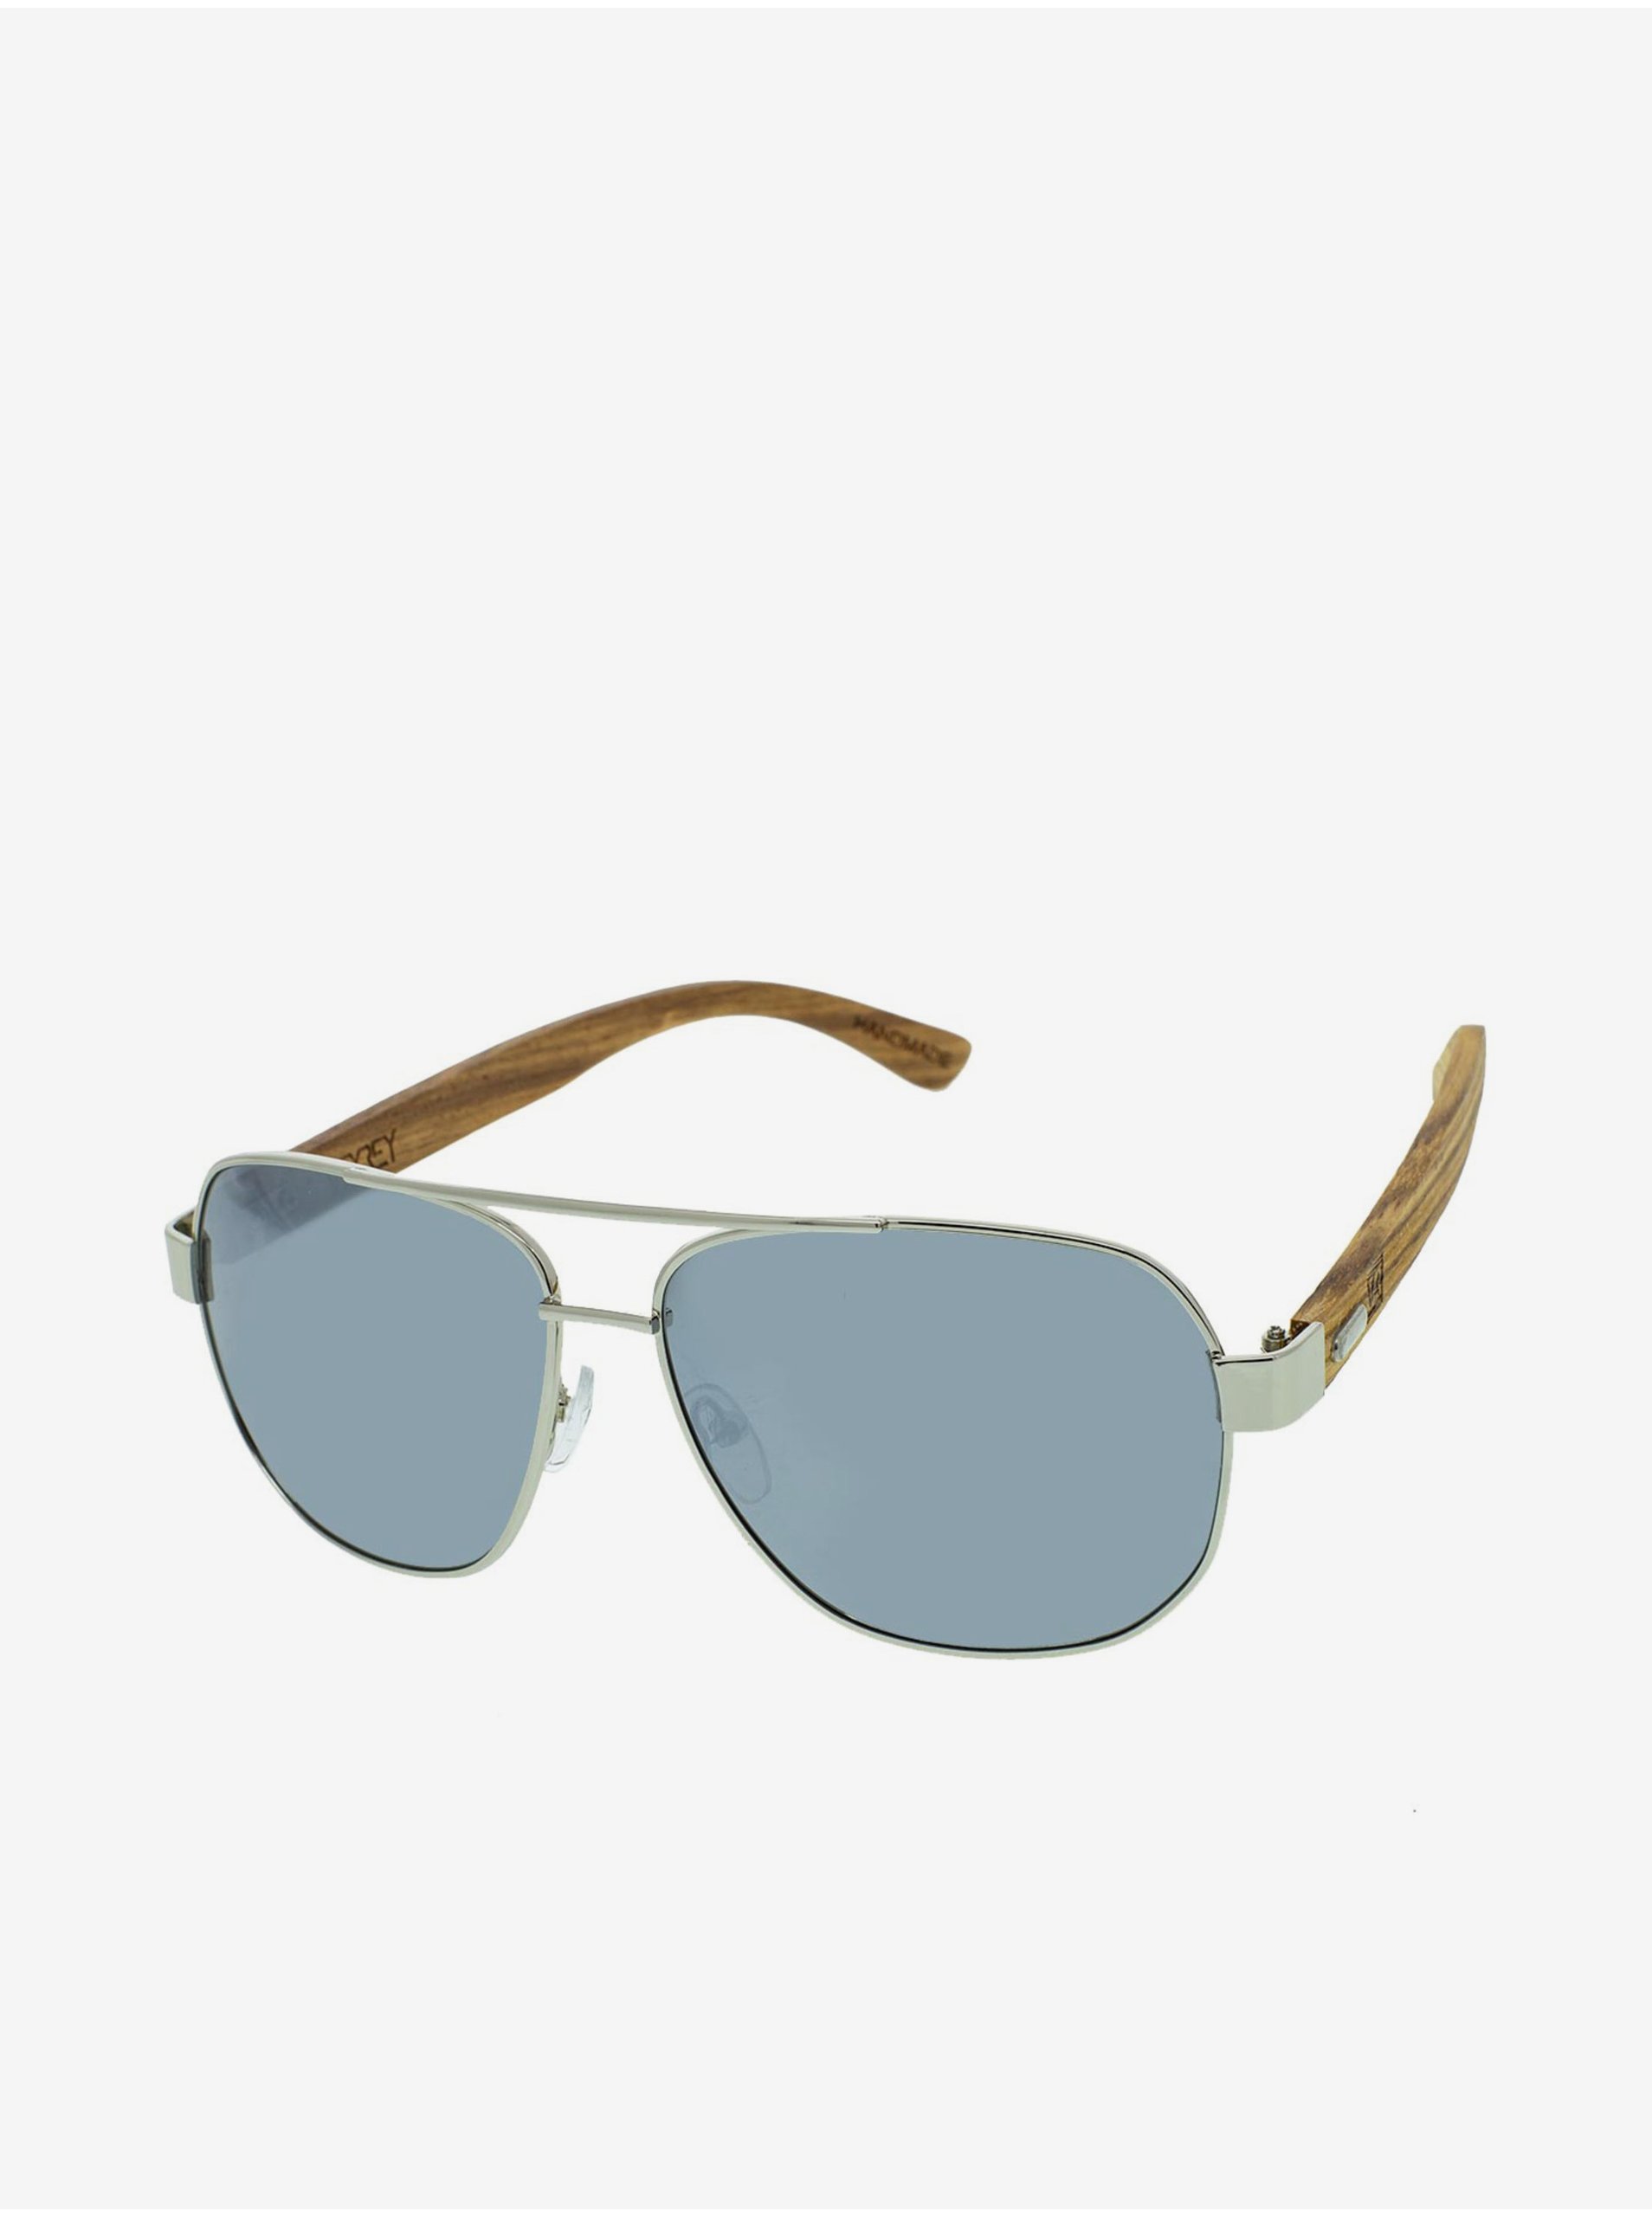 Lacno VeyRey Drevené slnečné okuliare pilotky Pent strieborné sklá